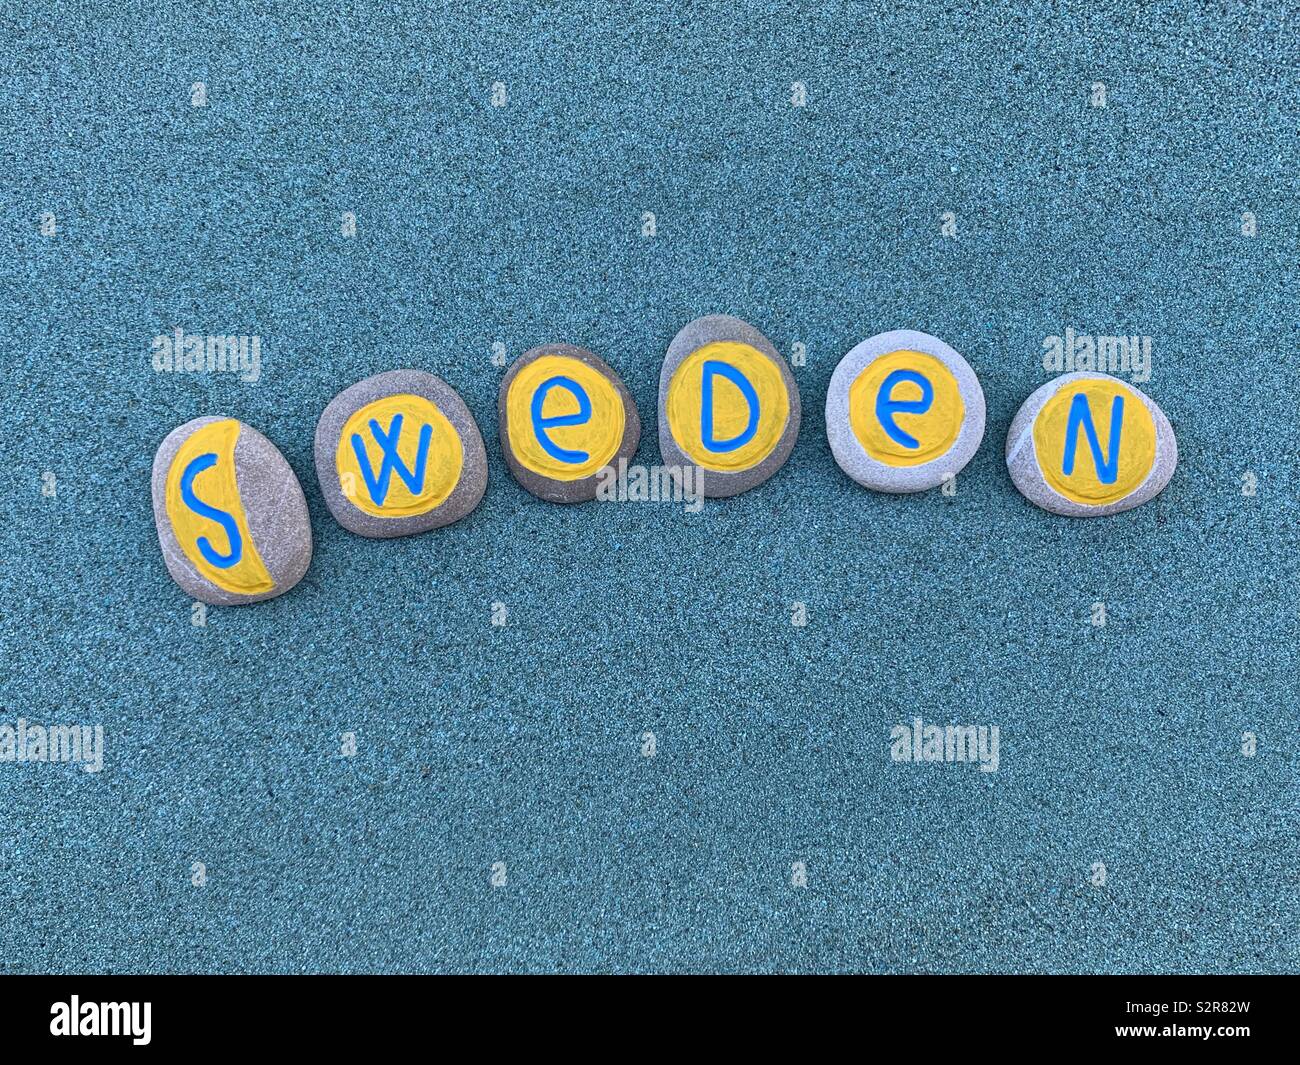 Suecia, souvenir del país escandinavo con piedras de diseño creativo Foto de stock